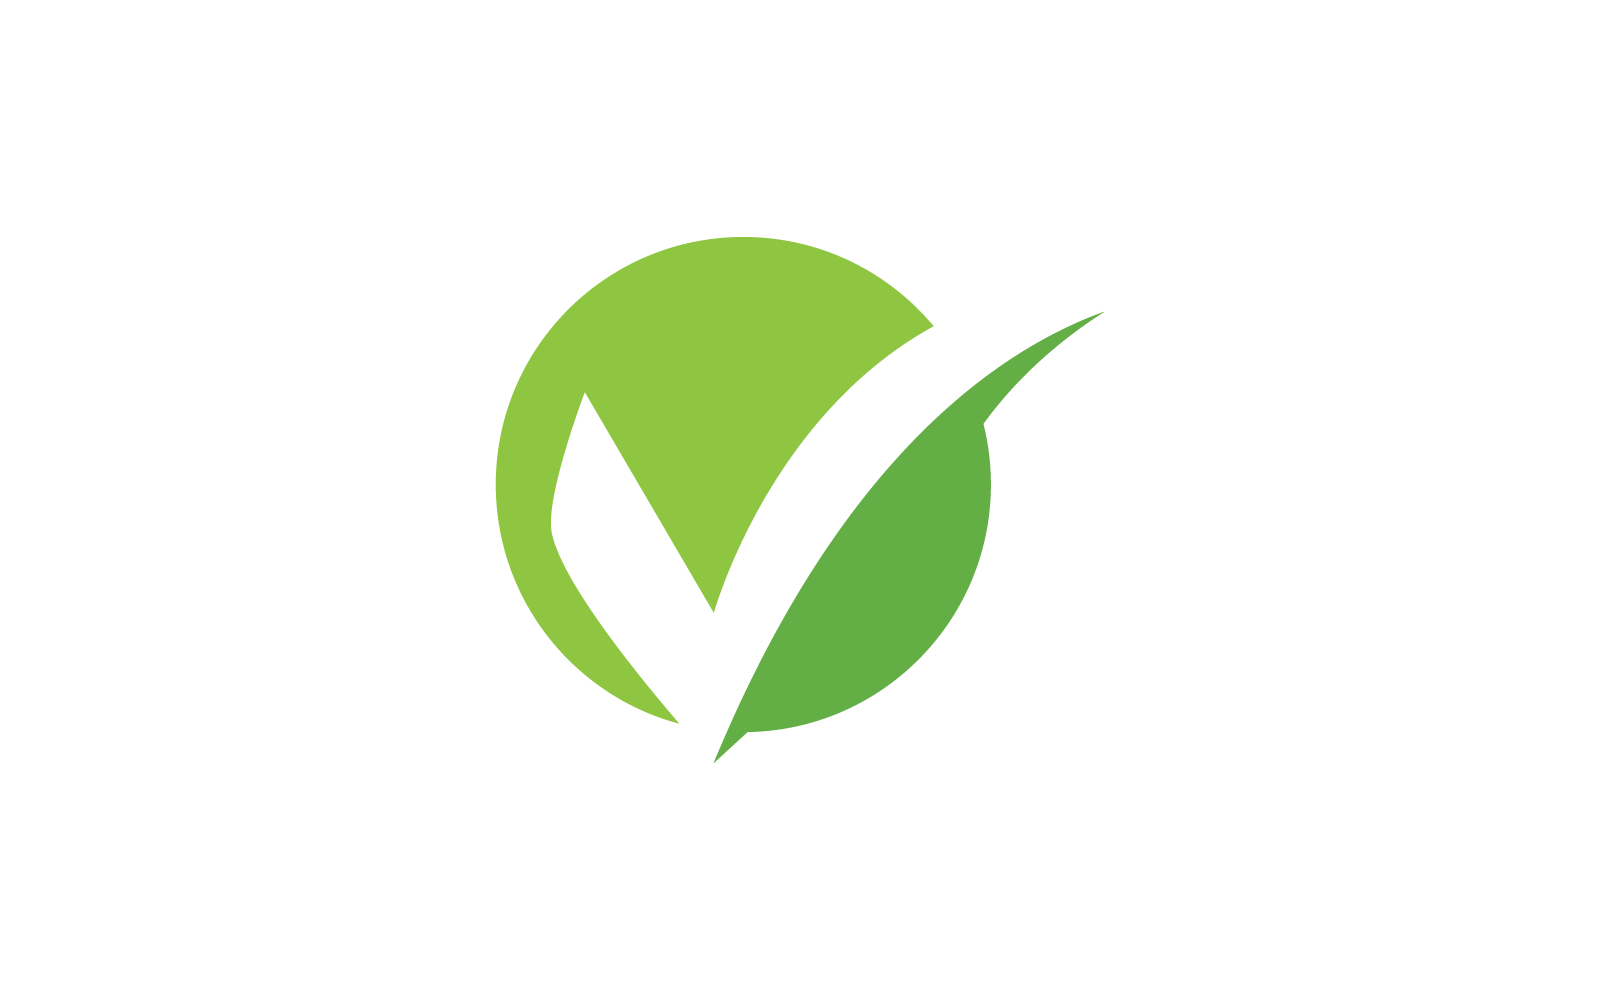 Check mark V letter logo design illustration